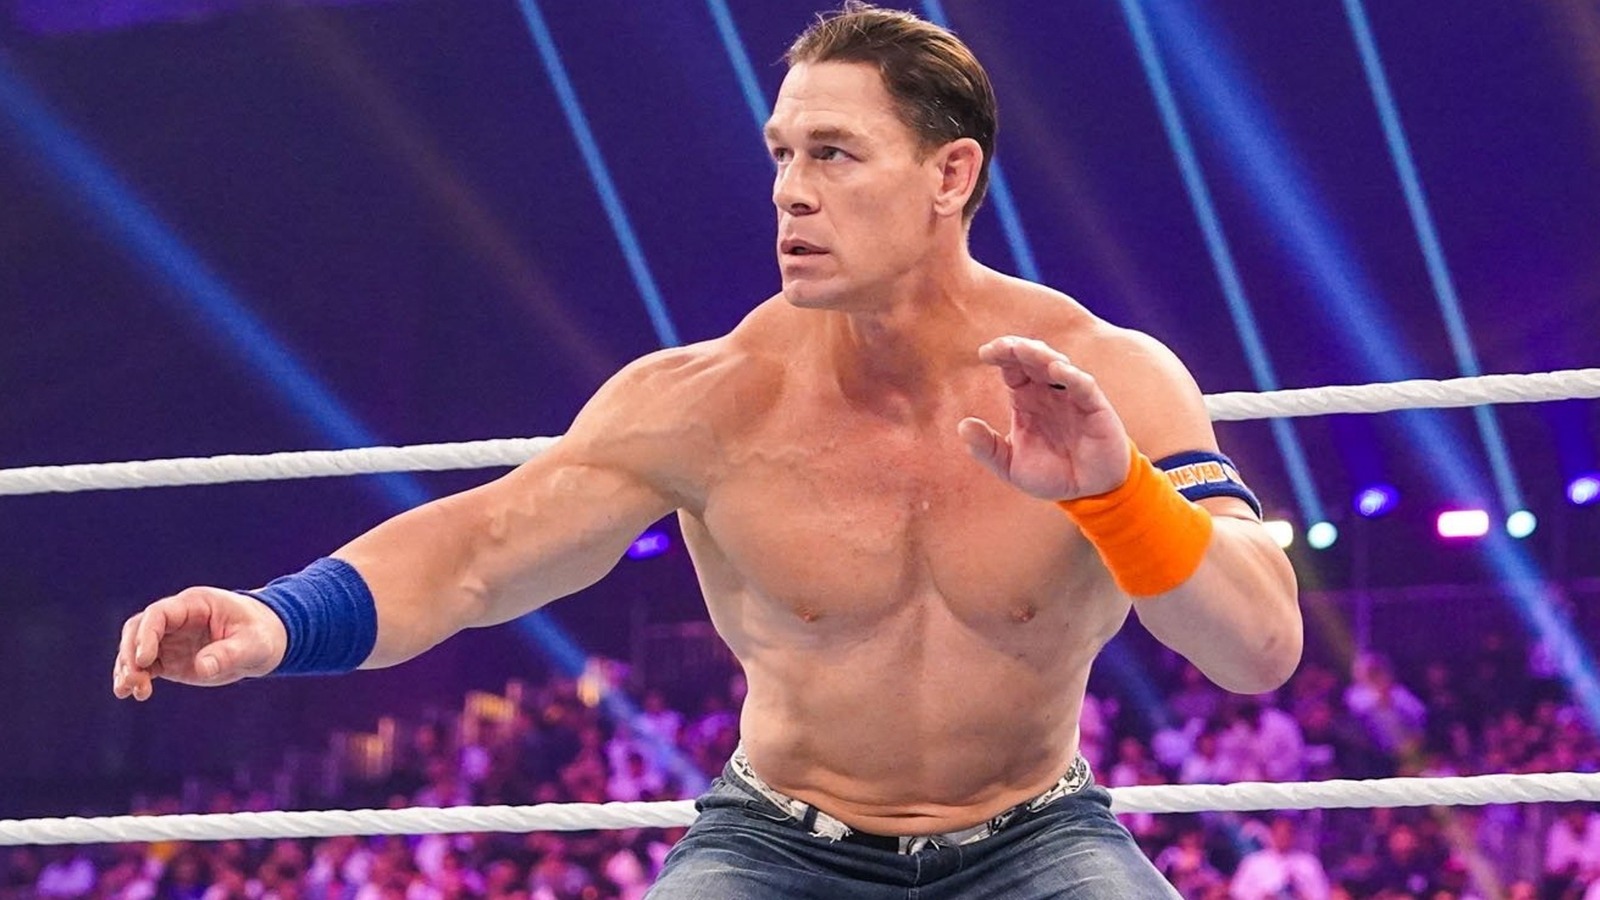 La star de la WWE, John Cena, partage une image cryptique sur Instagram, les fans spéculent sur la signification - nouvellesdumonte